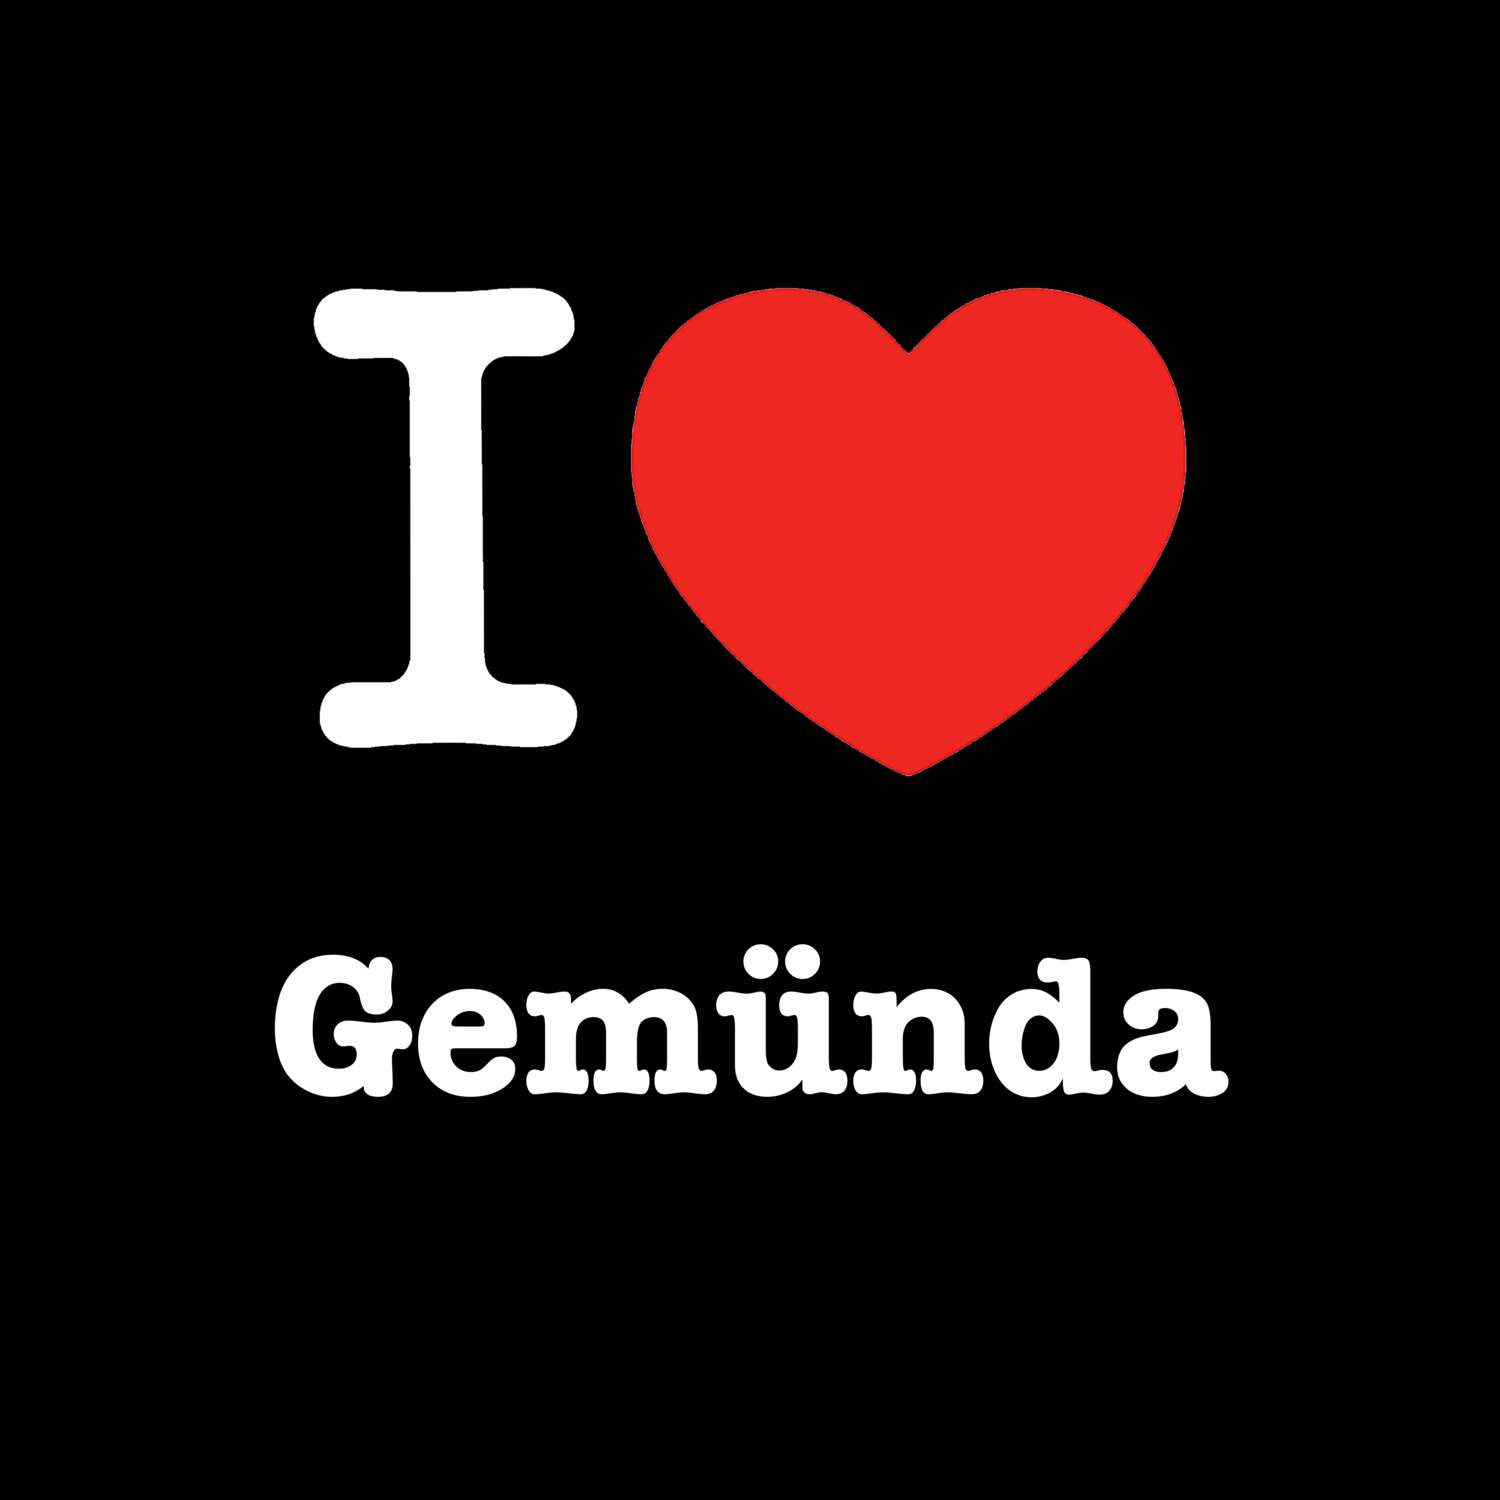 Gemünda T-Shirt »I love«